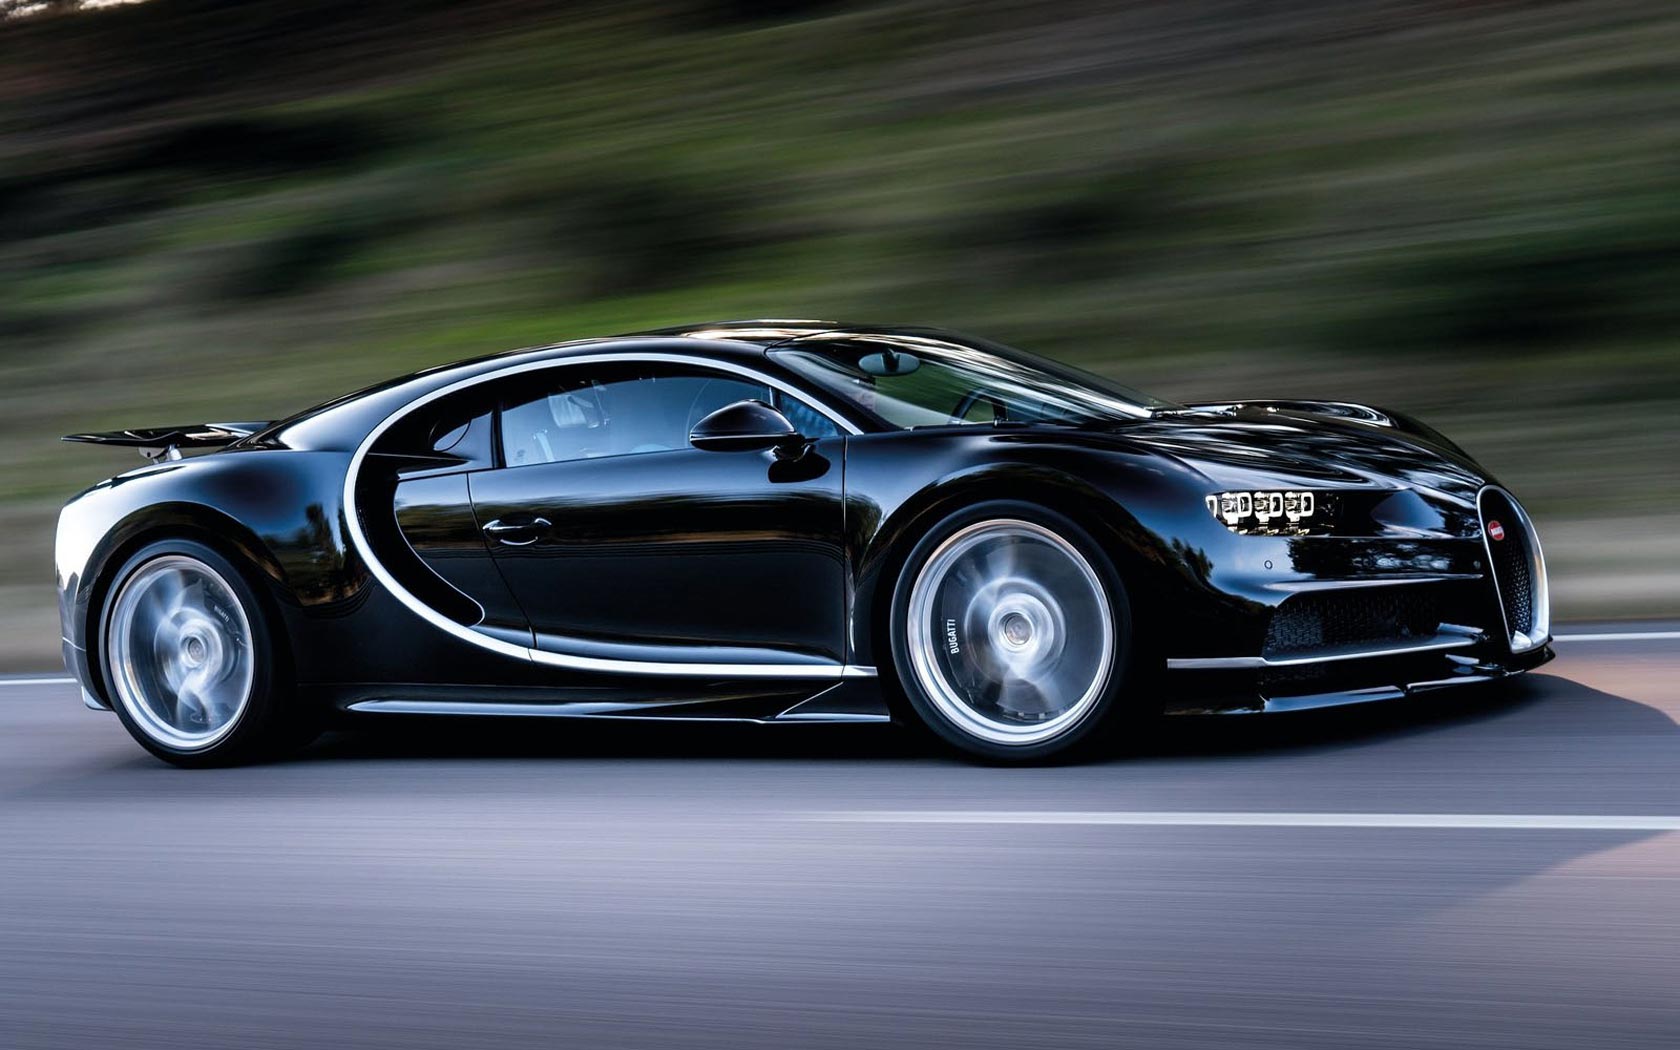  Bugatti Chiron 